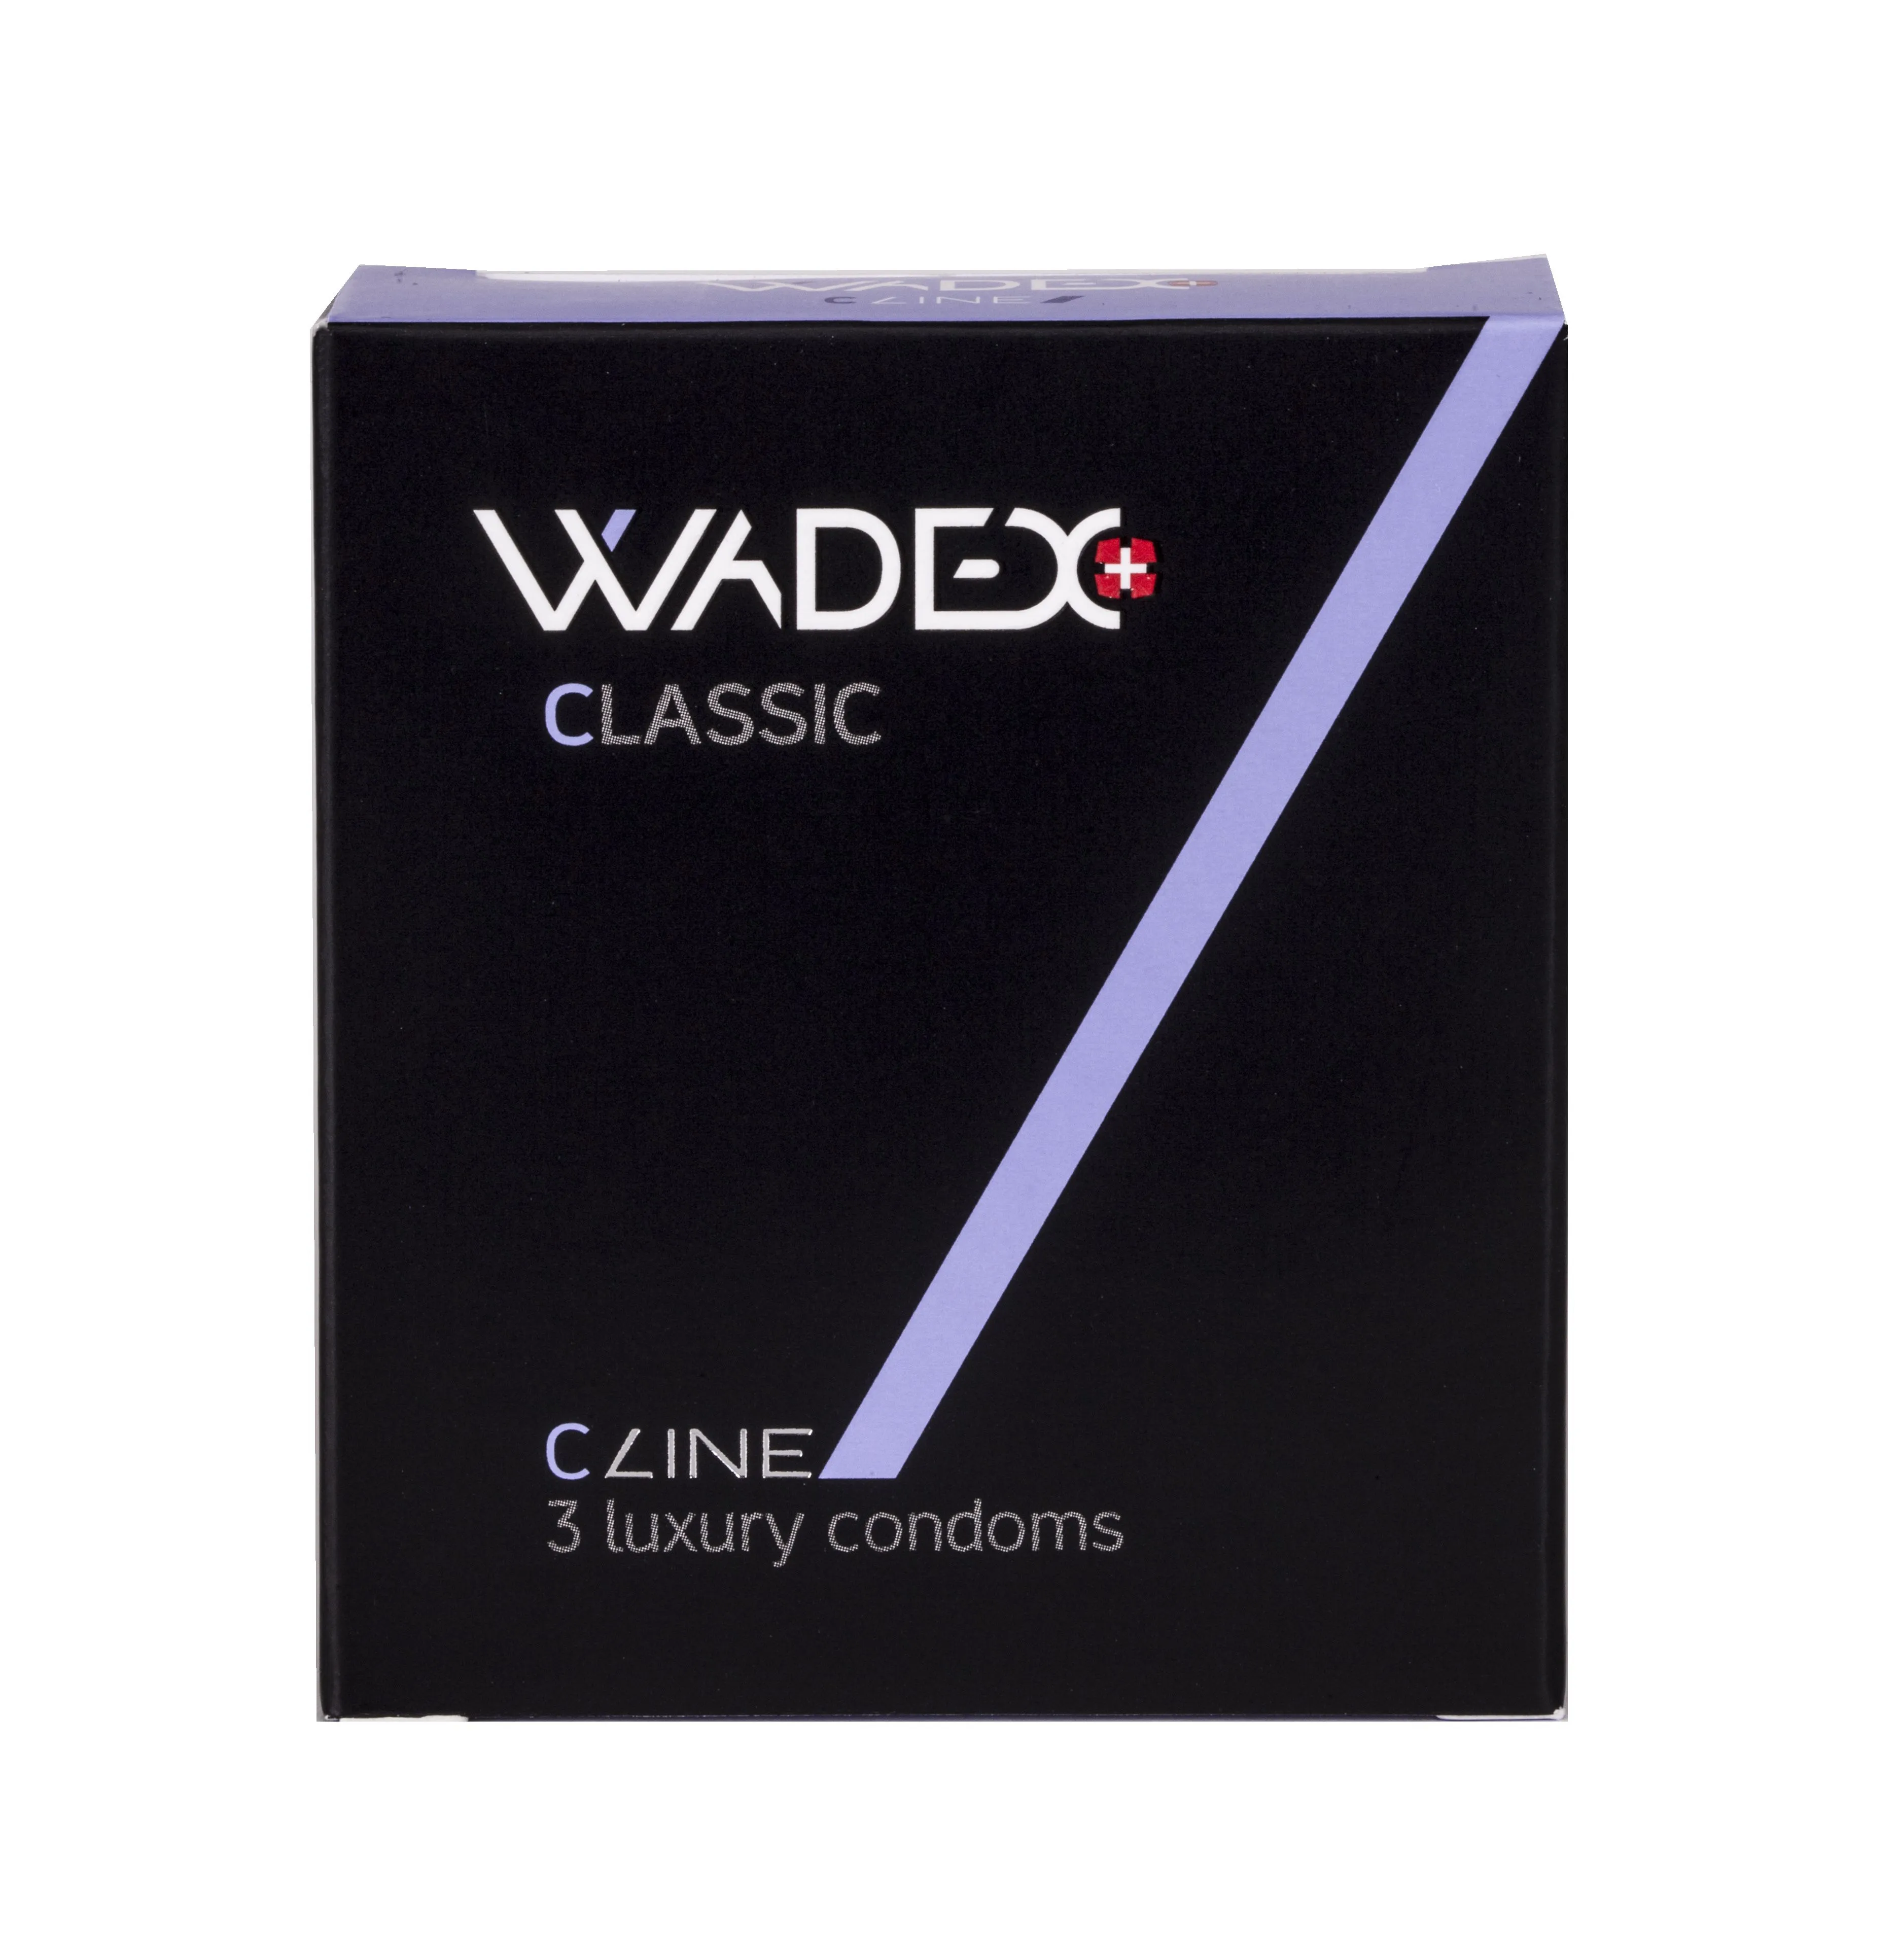 WADEX Classic